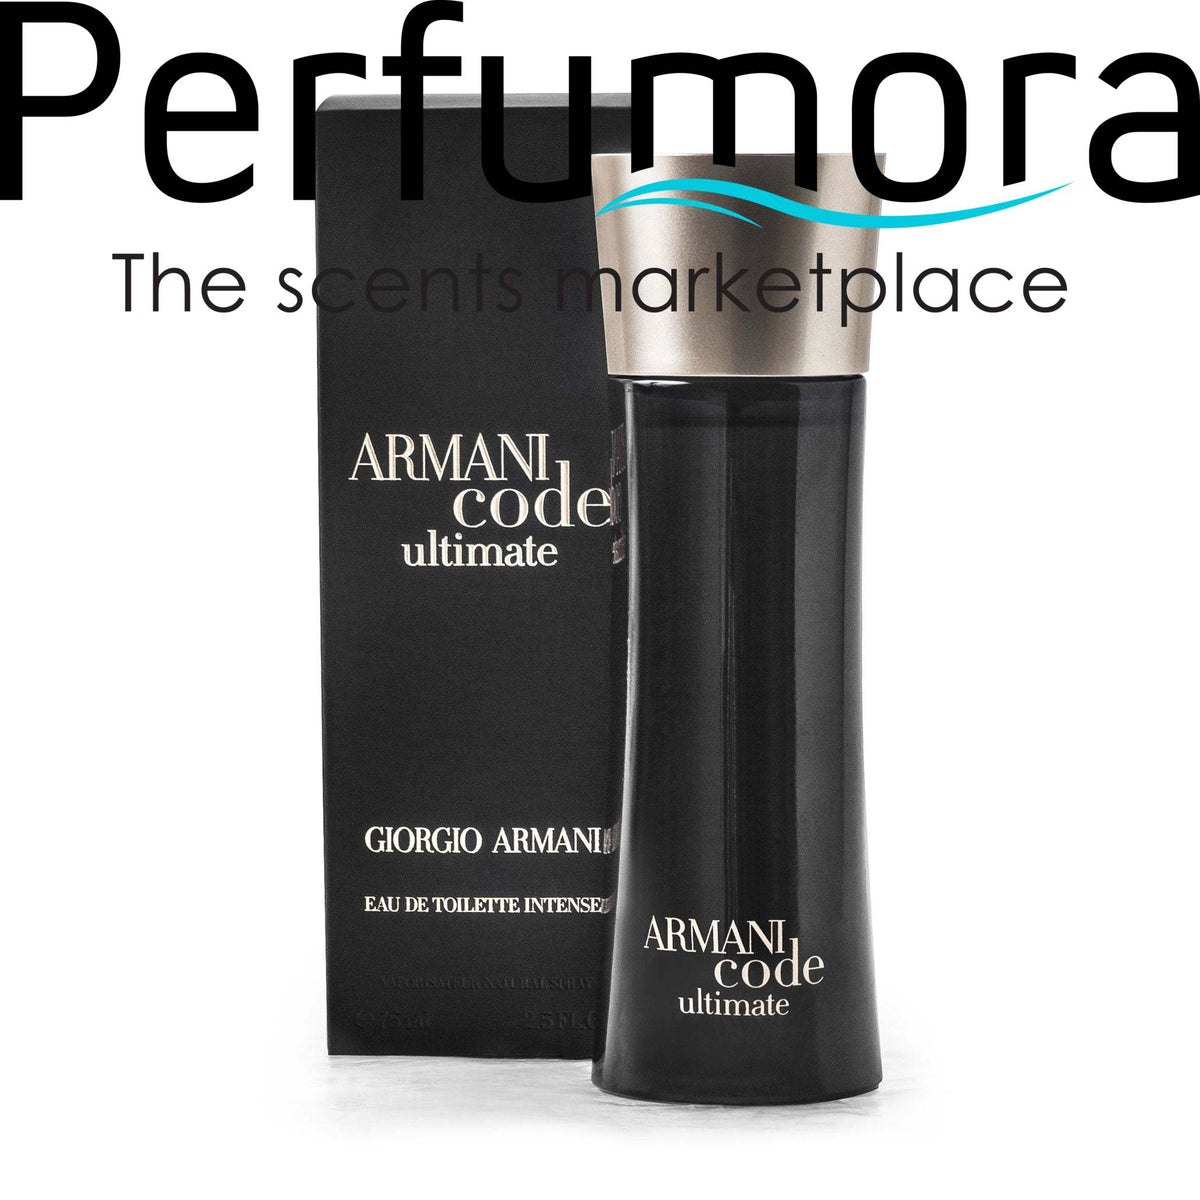 Armani Code Ultimate Eau de Toilette Spray for Men by Giorgio Armani